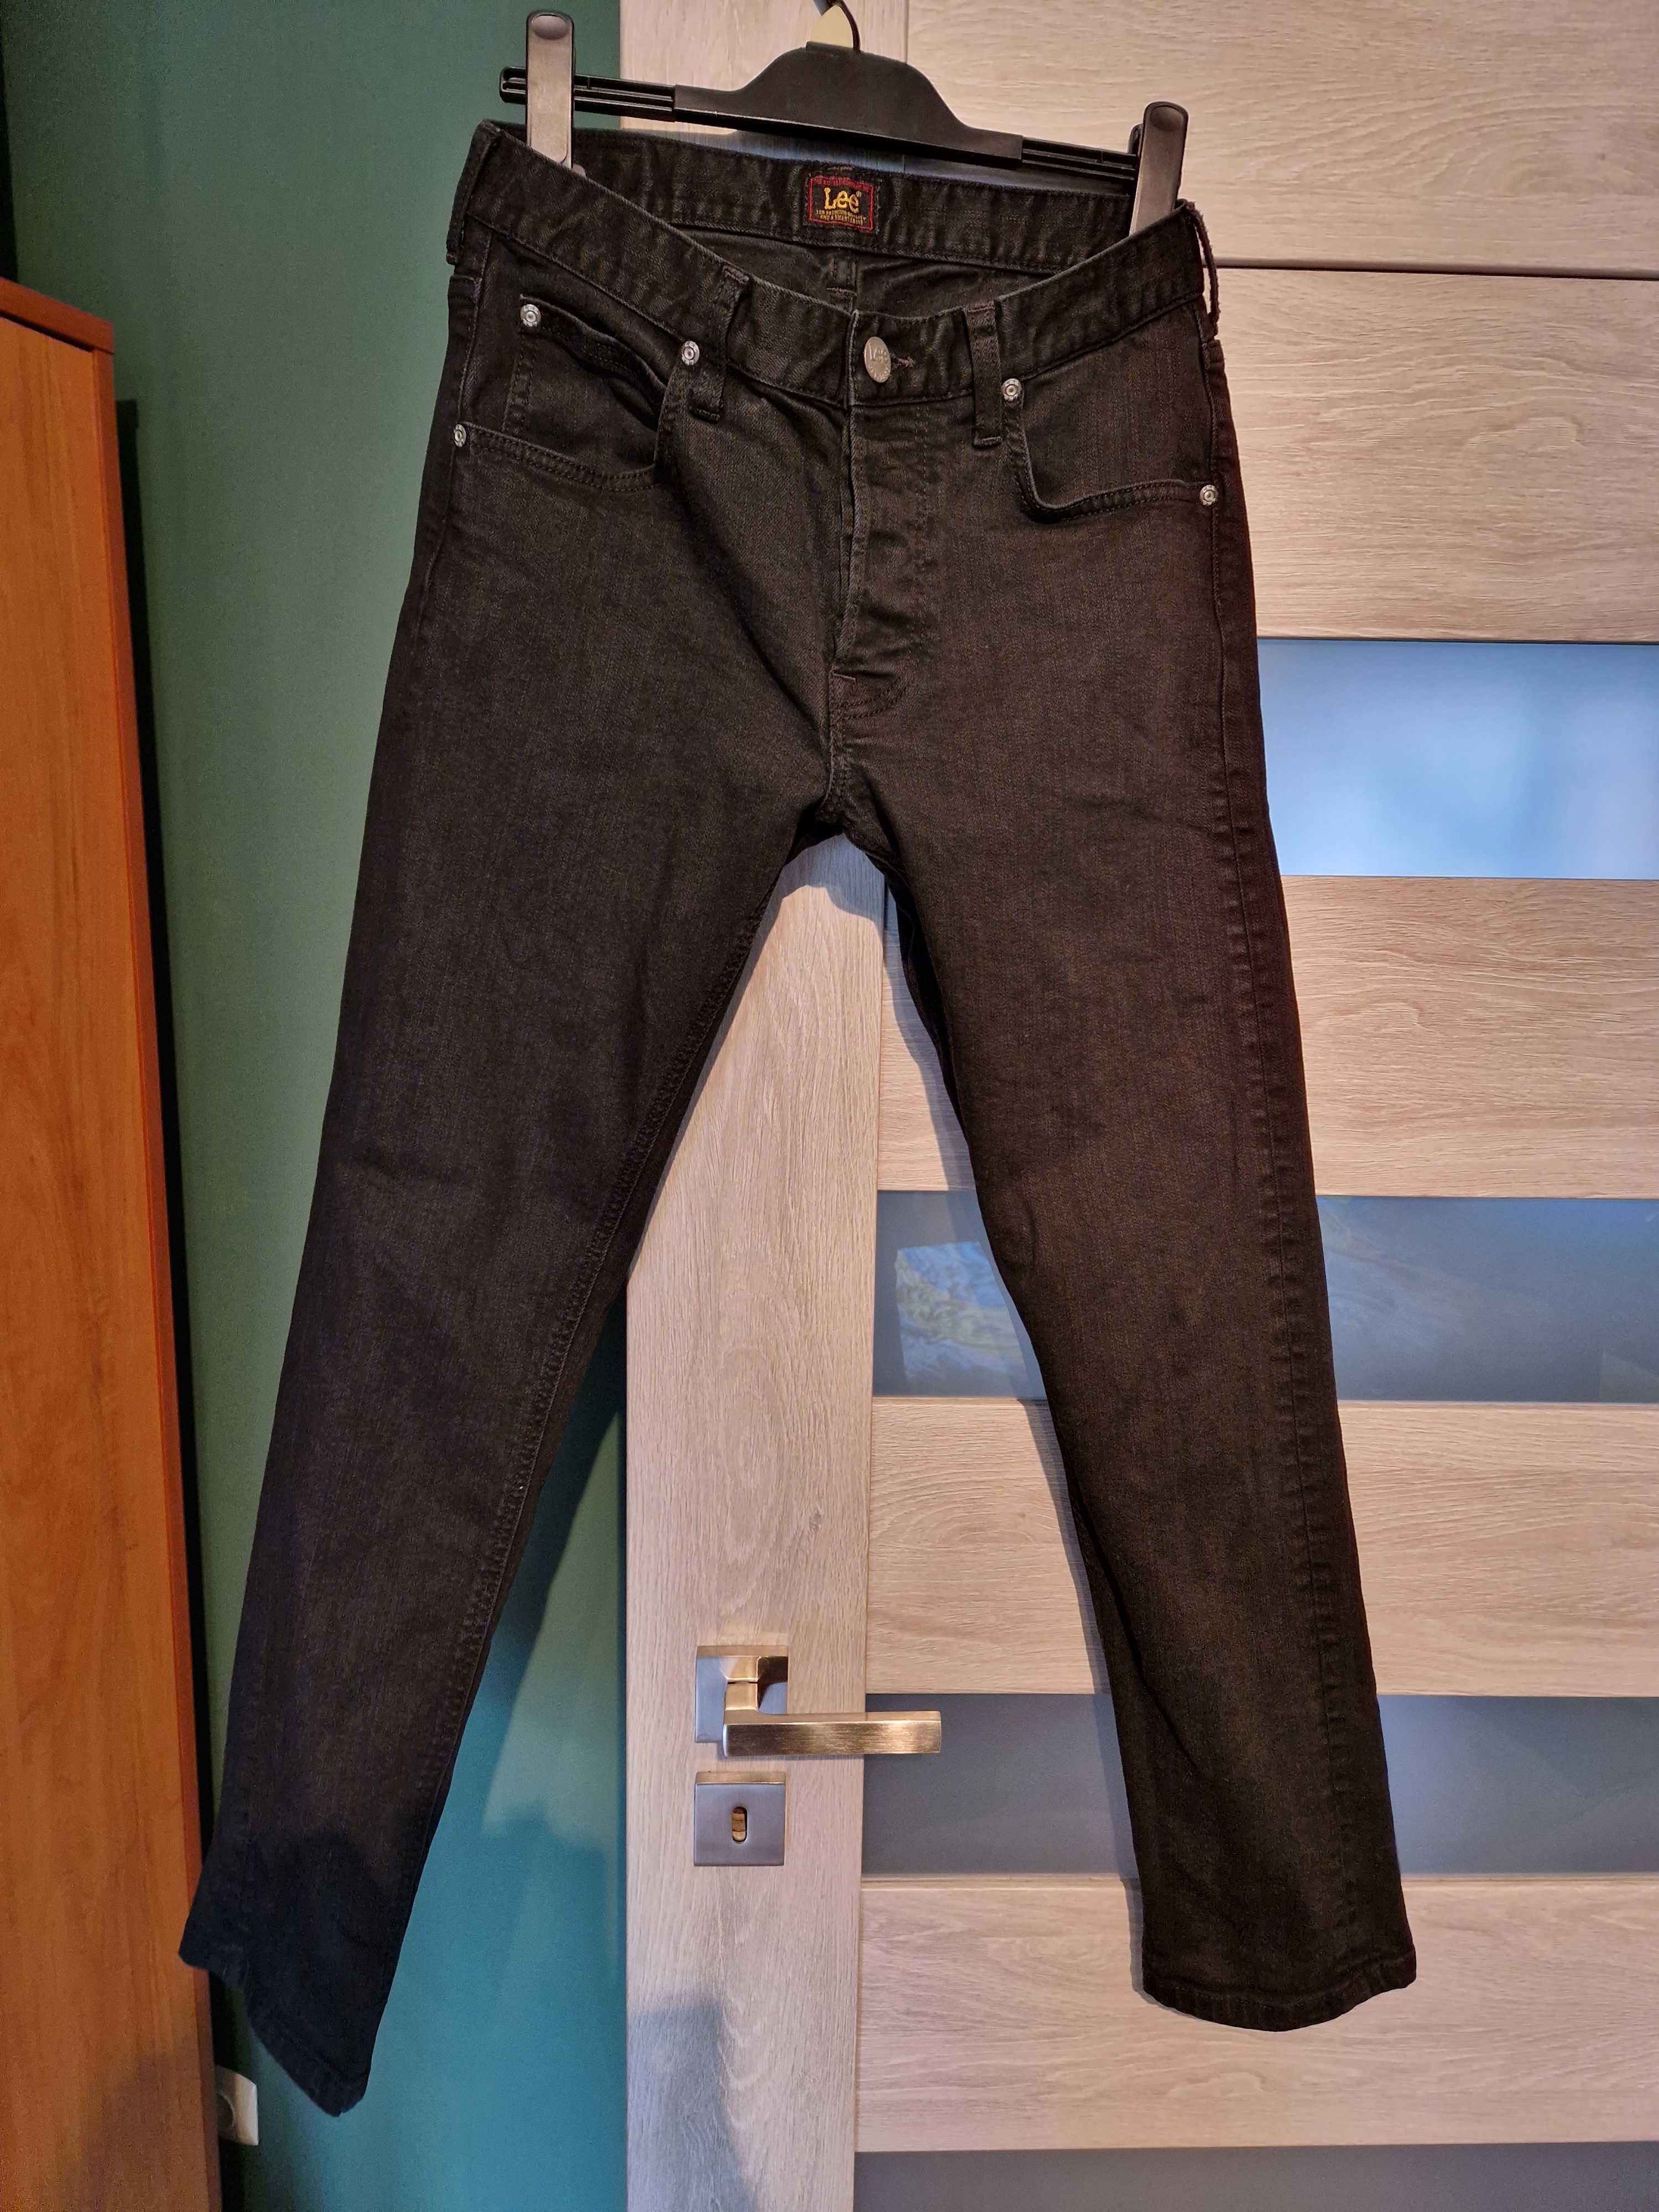 czarne jeansy męskie lee daren button 30/32 W30L32 prawie nieużywane